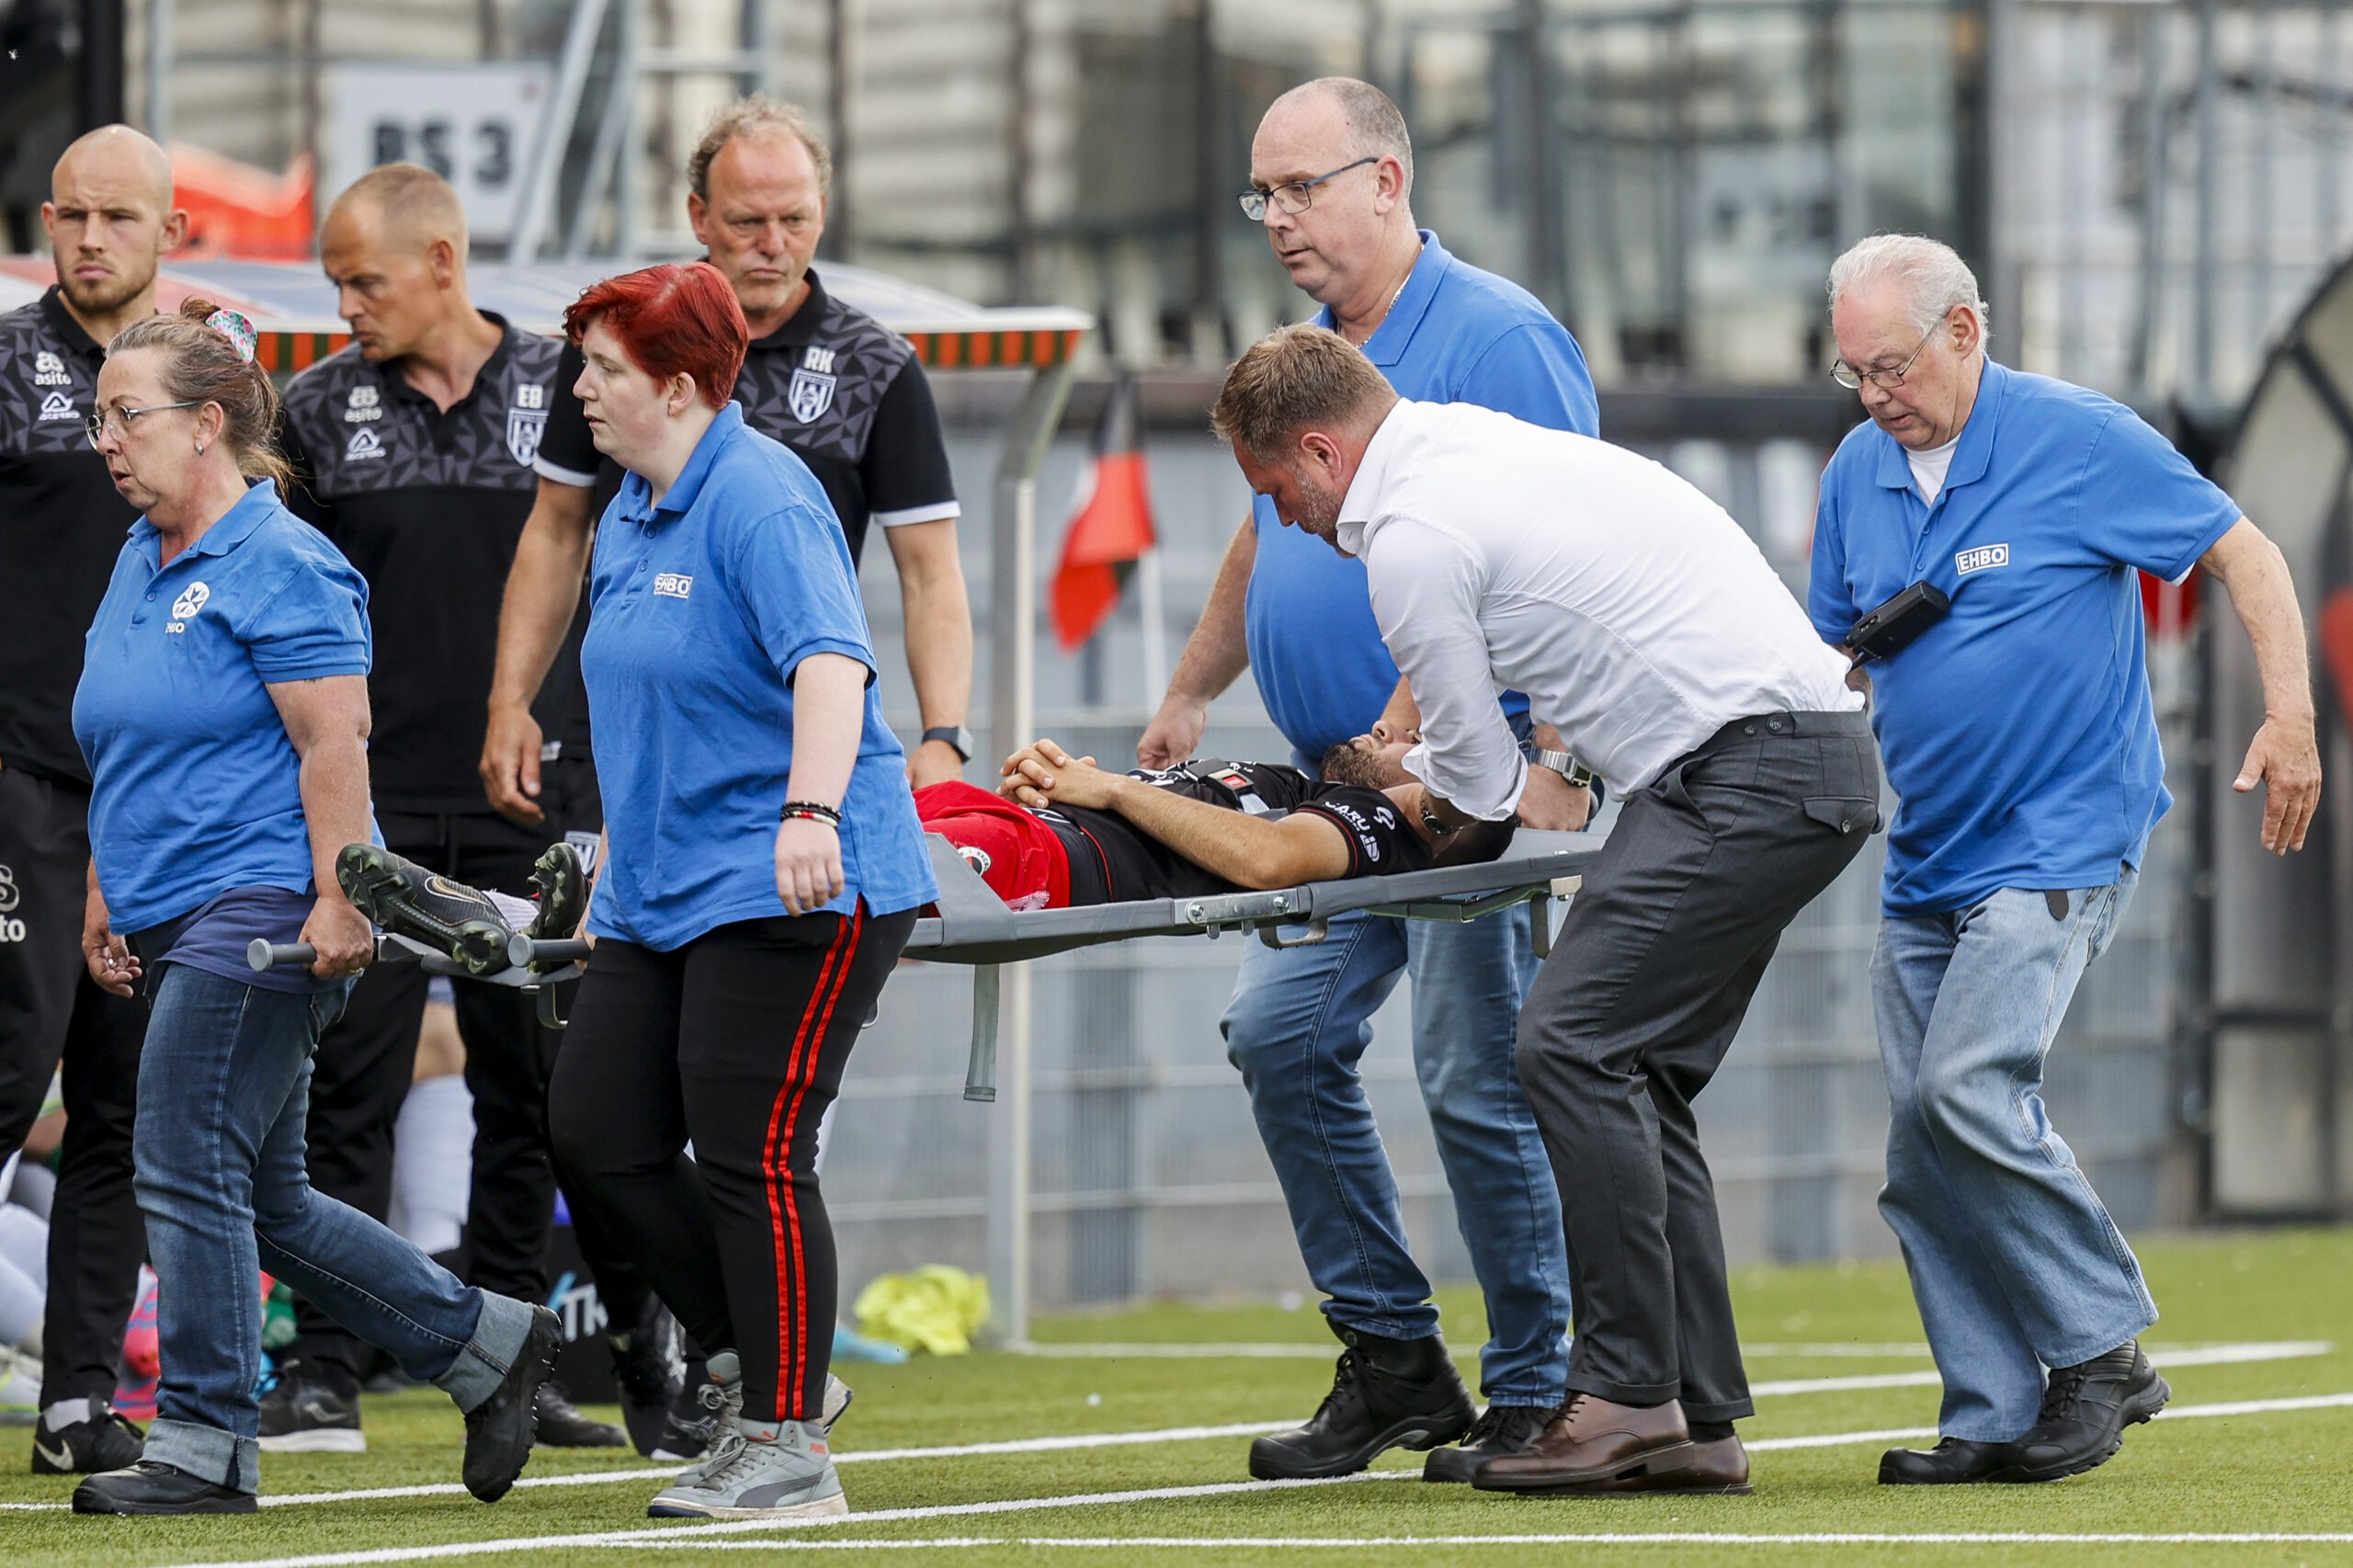 Zorgen bij UEFA om hoofdletsel voetballers: ‘Je kan met een klap gewoon een hersenschudding oplopen’